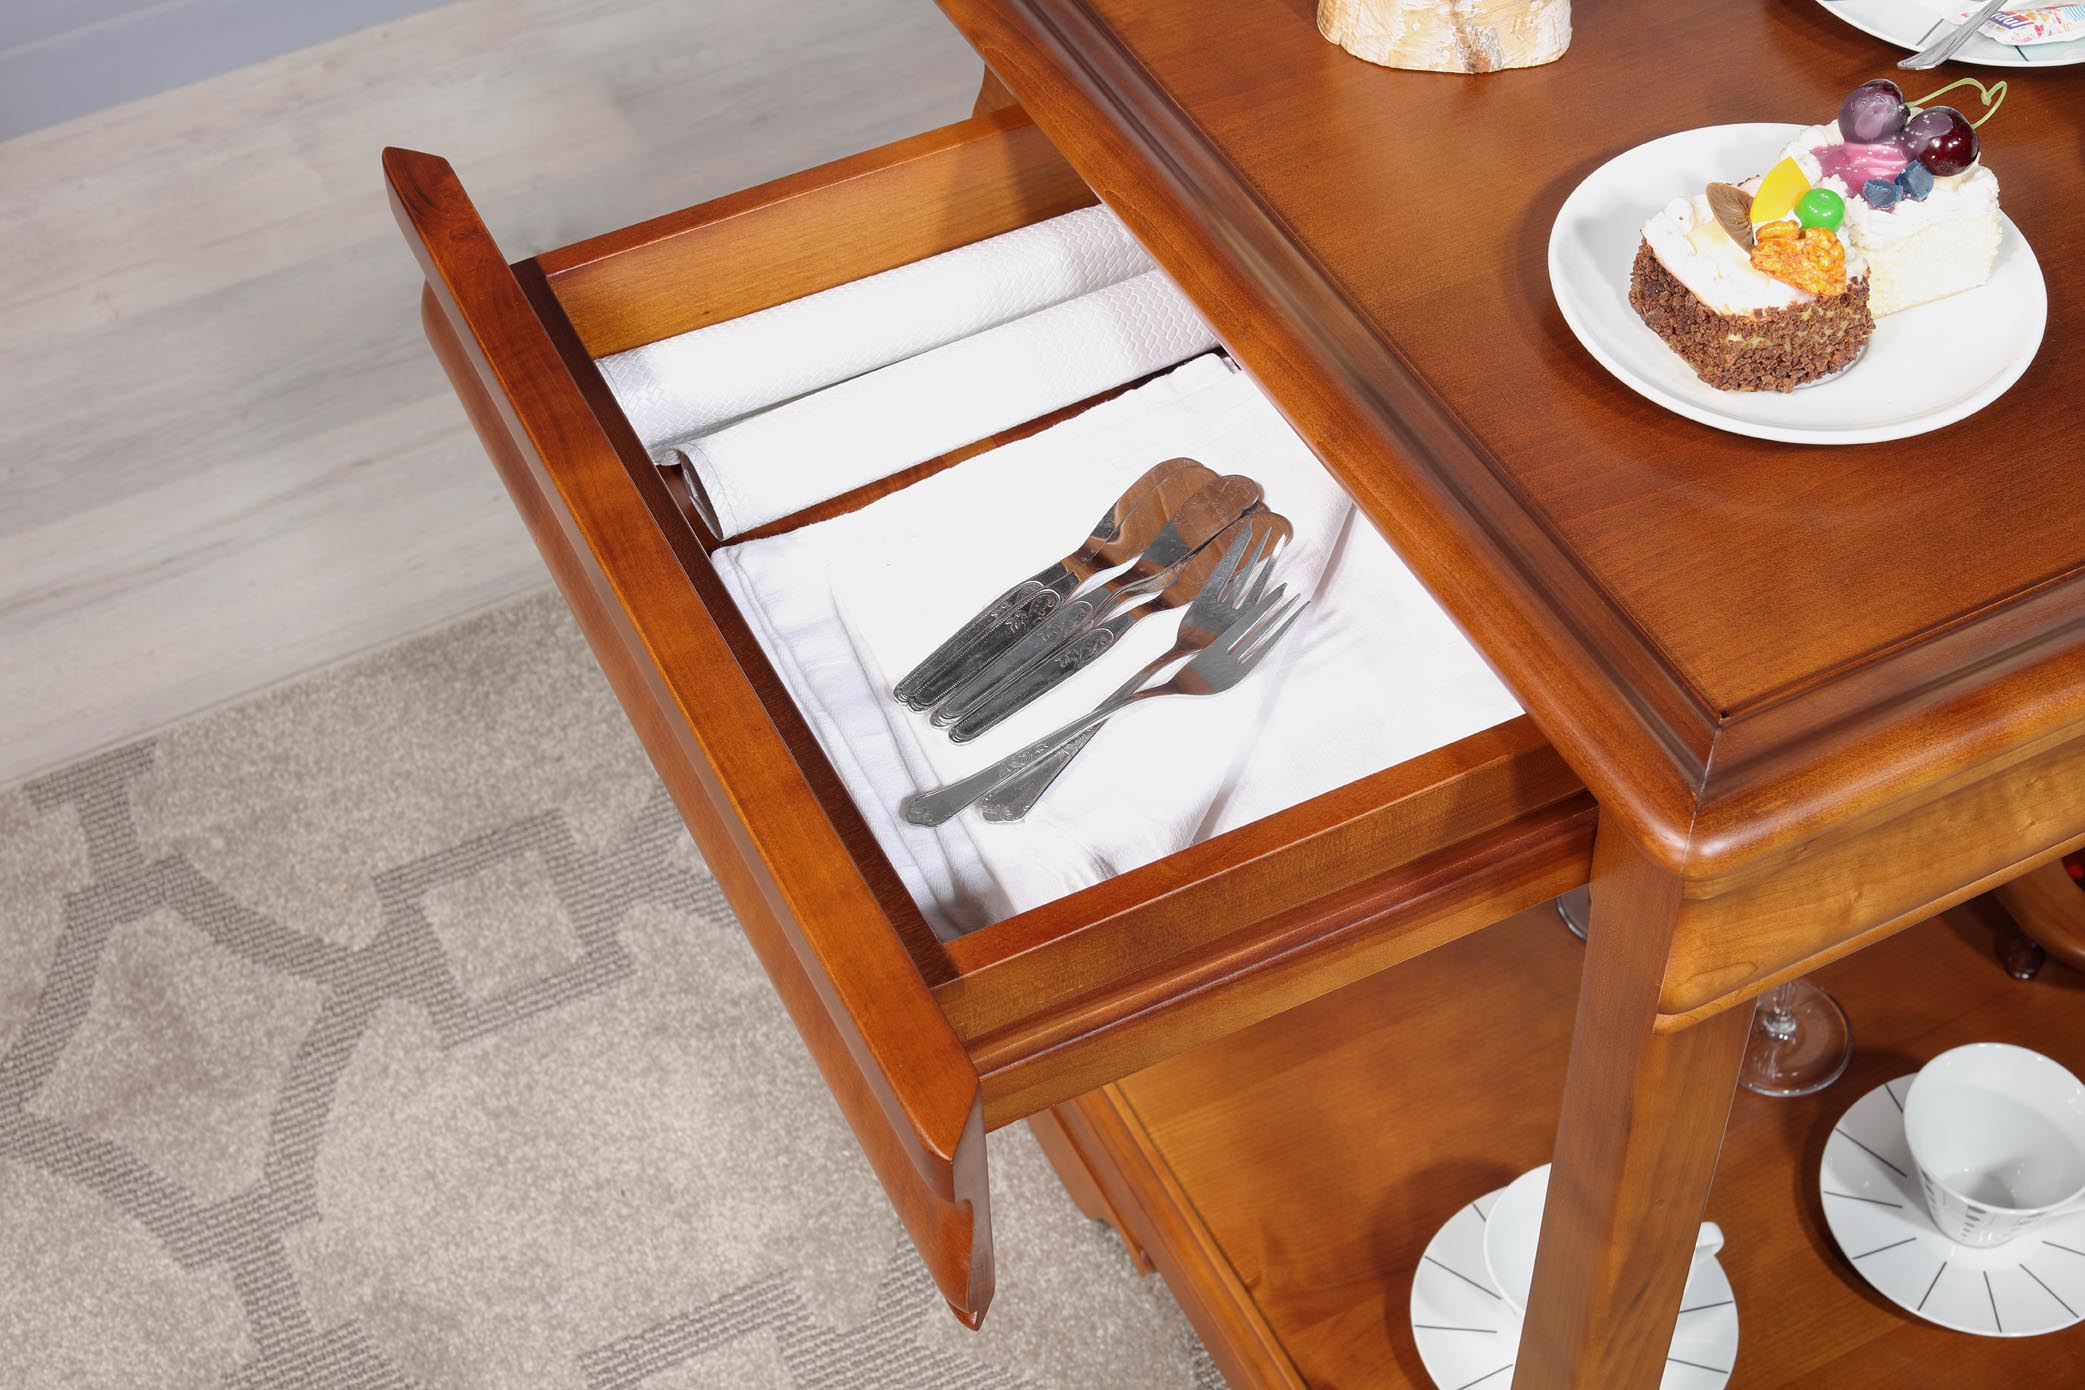 Table Roulant sur Lit, Table de Chevet avec roulettes 160 cm Table